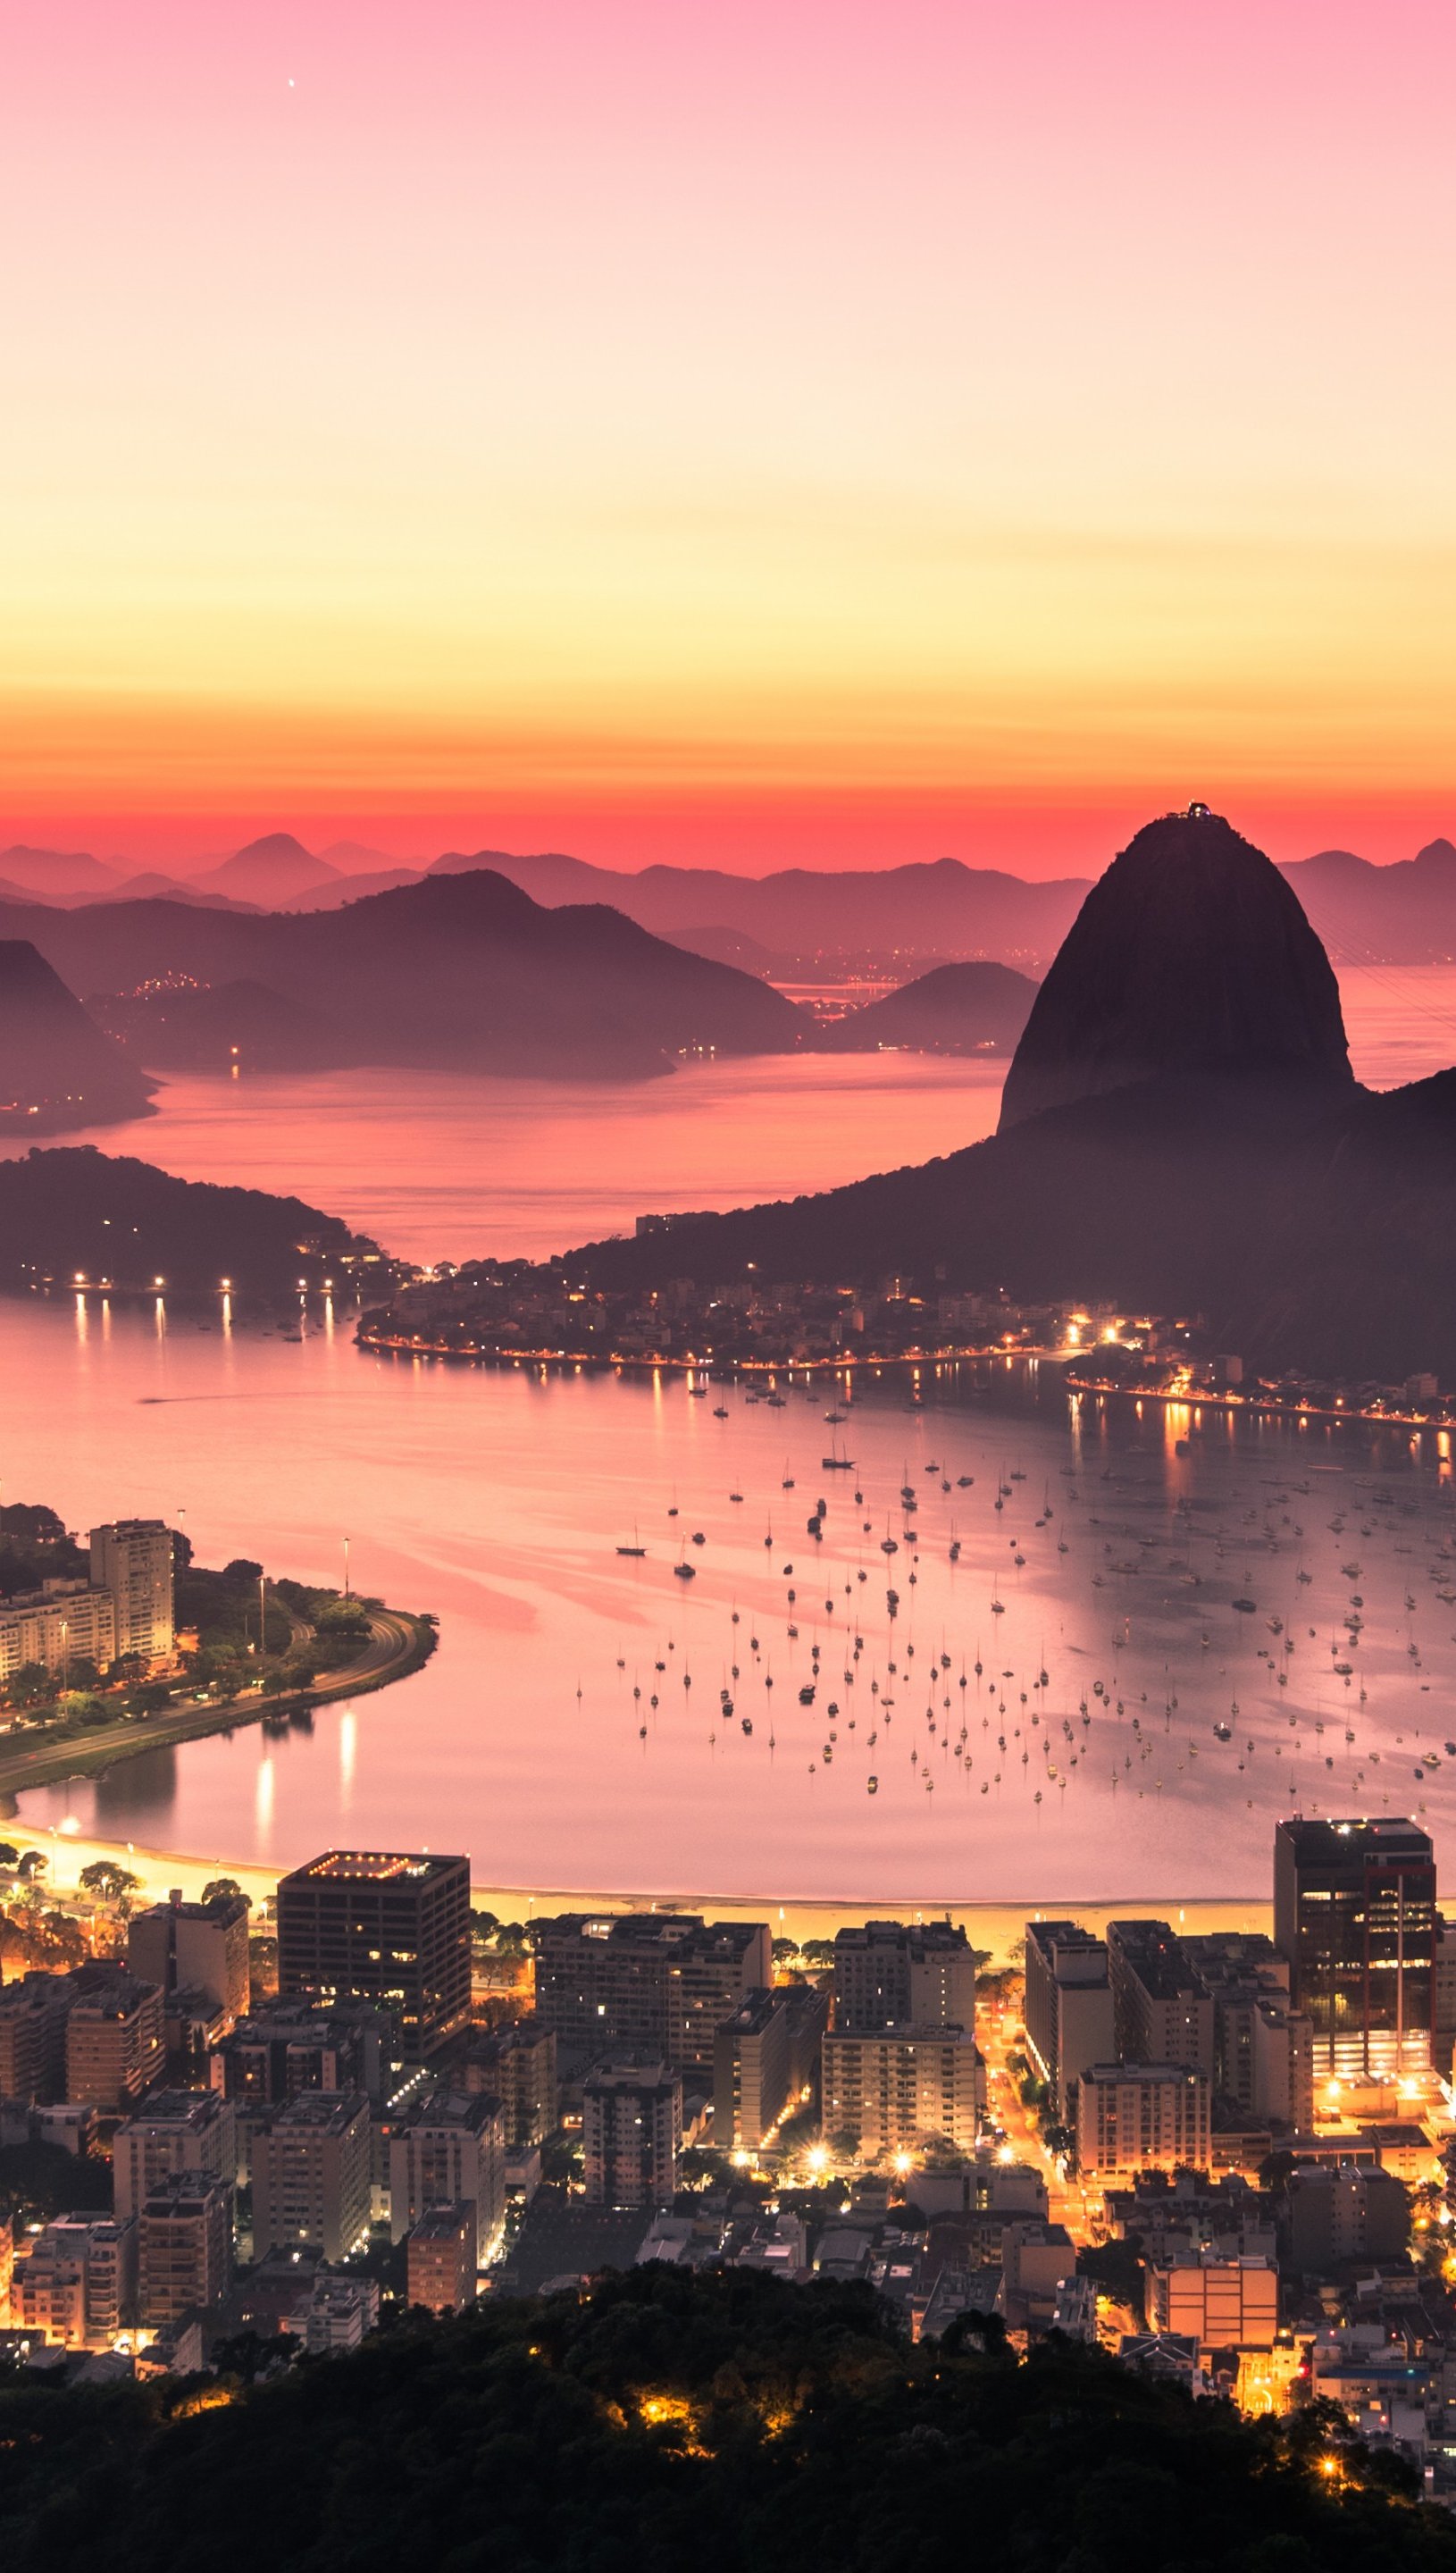 Brazil night of Rio de Janeiro wallpaper  1920x1080  849817  WallpaperUP